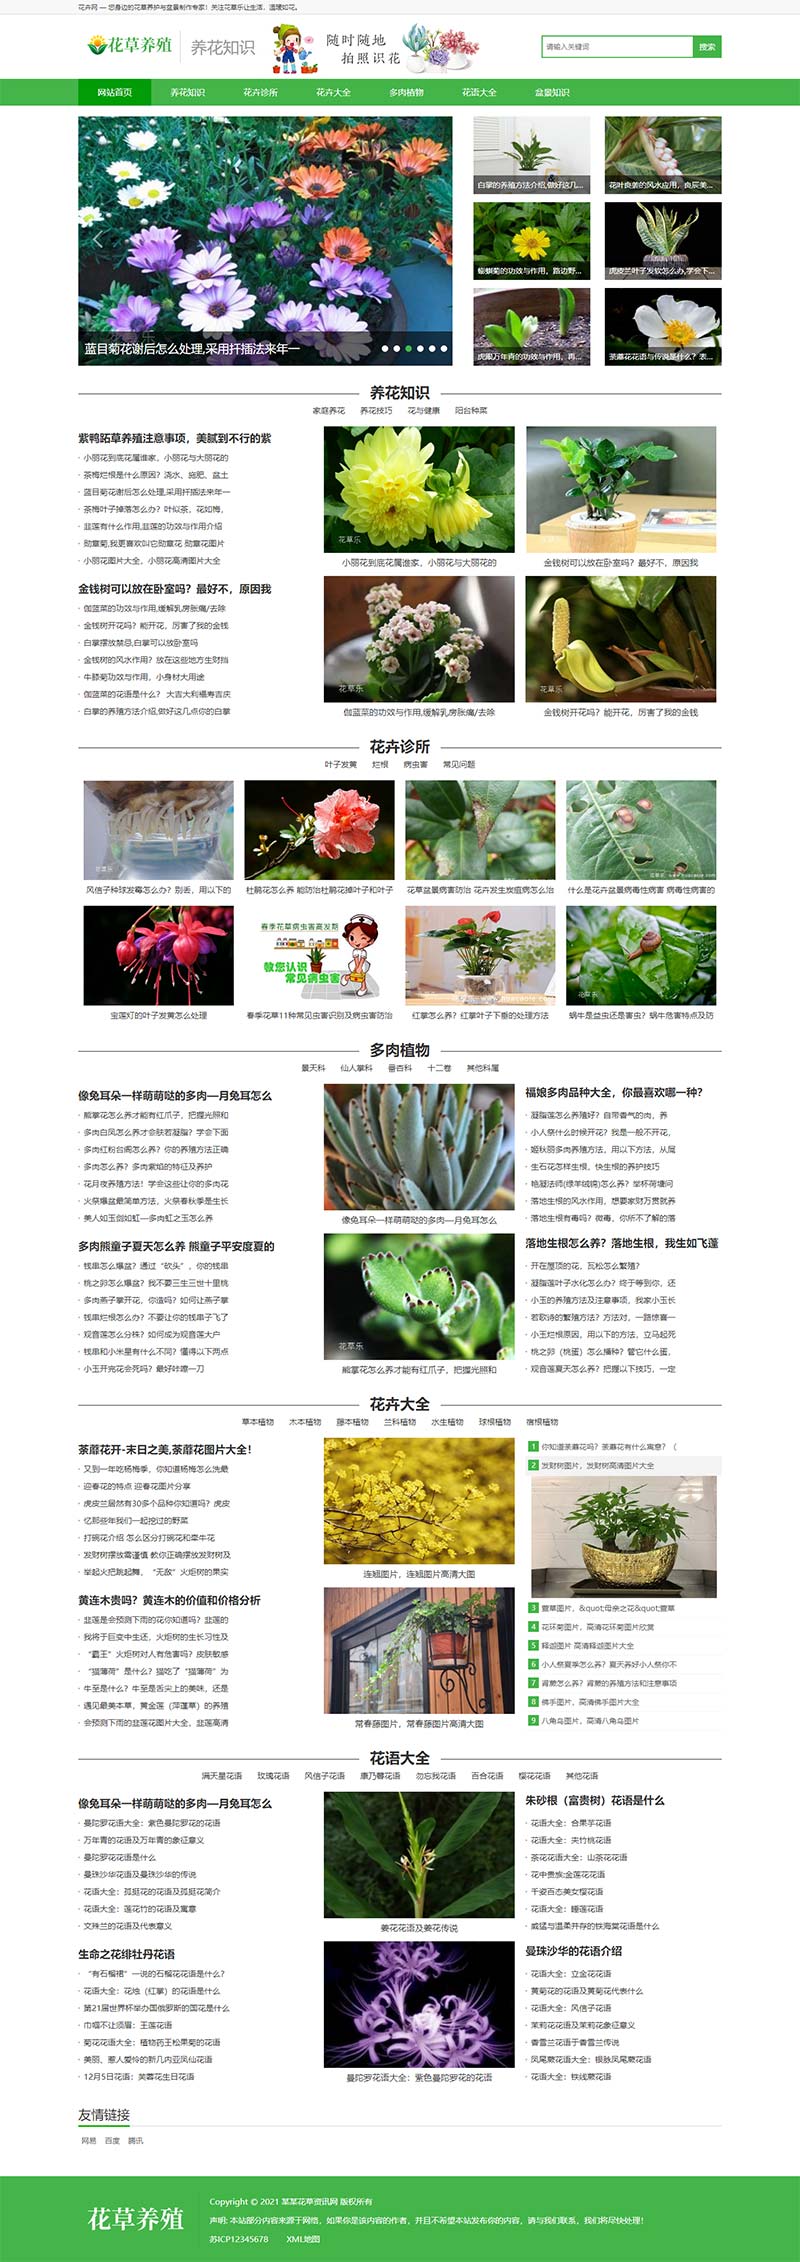 花草植物花卉养殖新闻资讯类Wordpress模板效果图